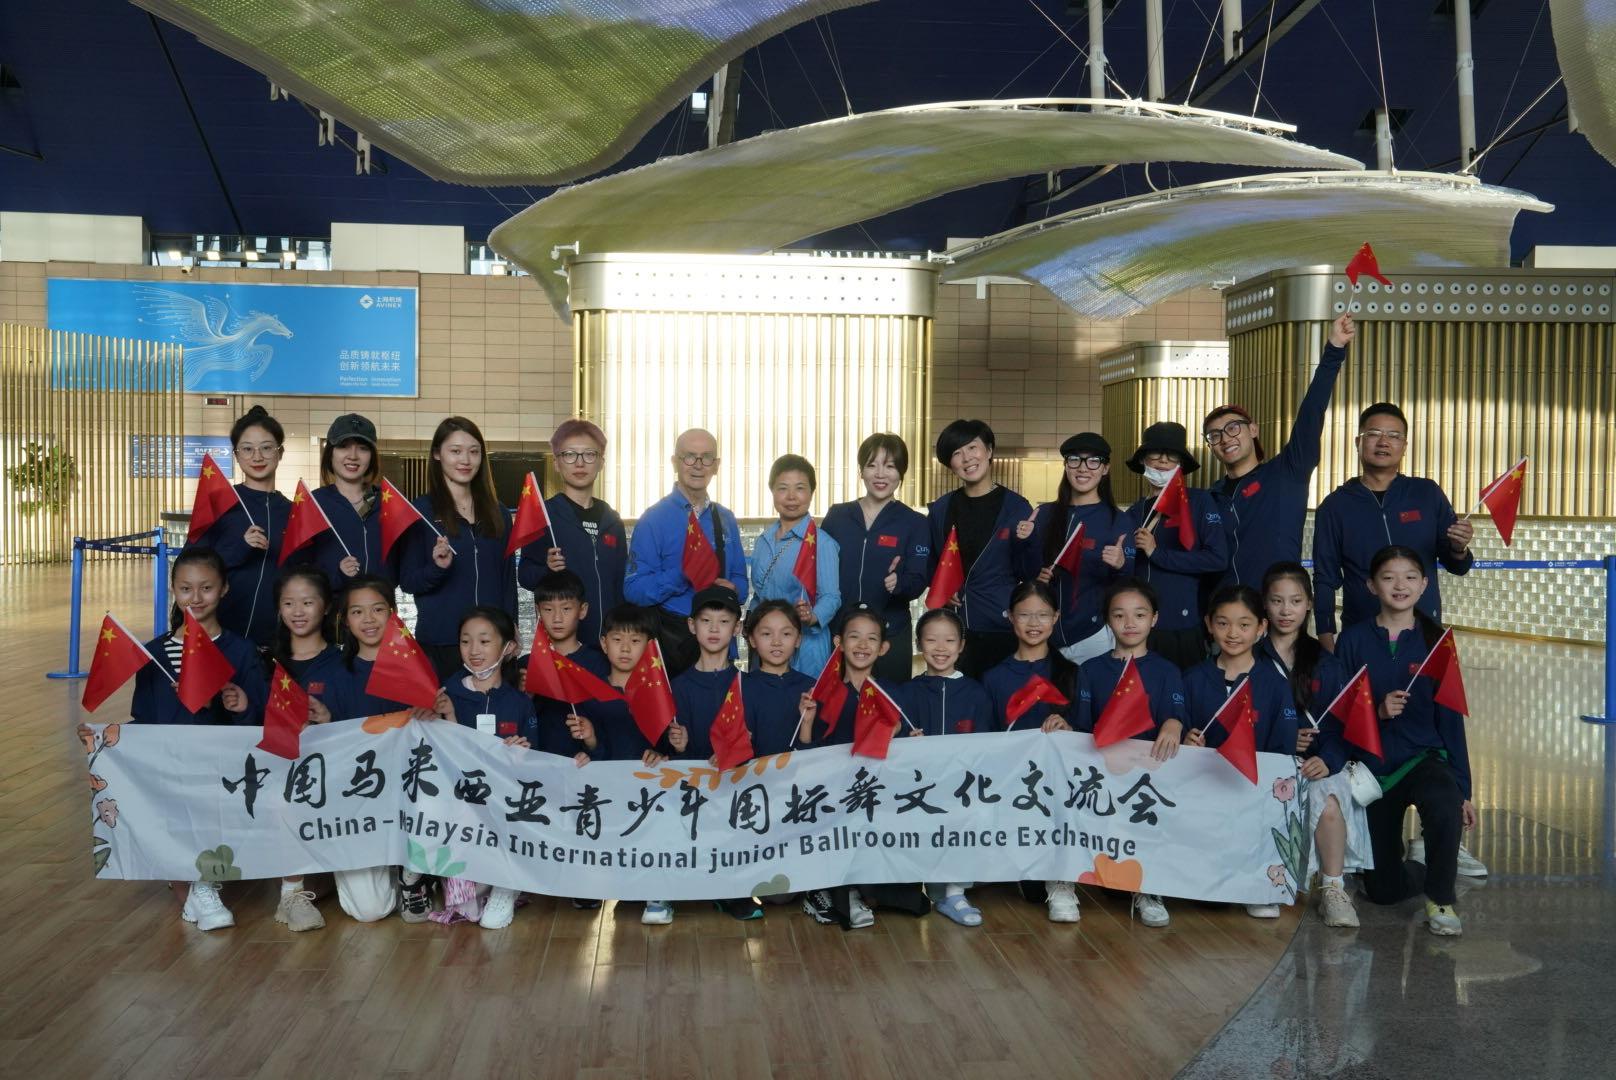 吉隆坡国际青少年国标舞交流大会迎来中国代表队